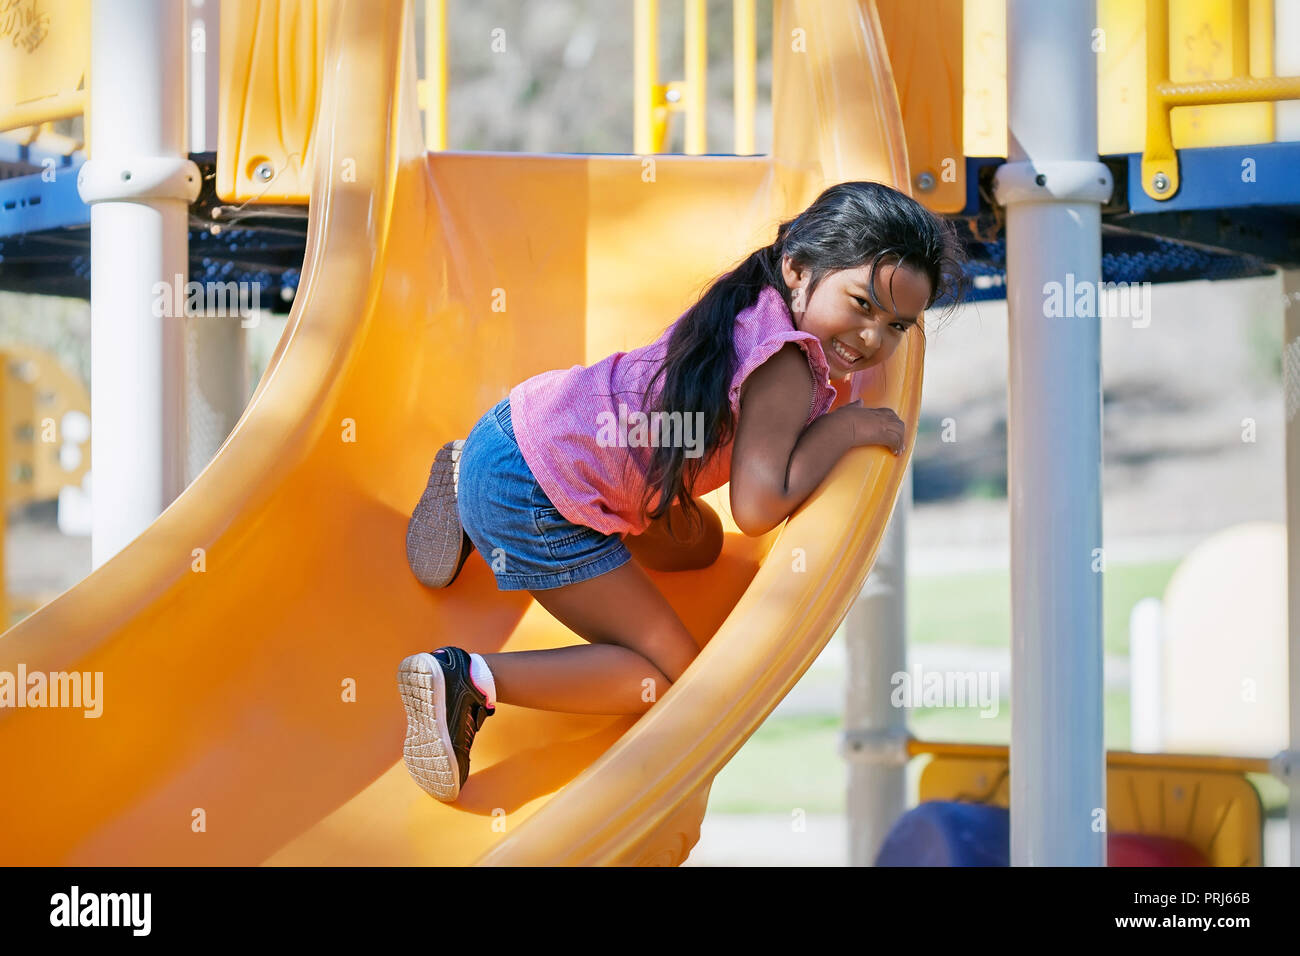 Junge Mädchen 5 Jahre alten Klettern auf einer Folie in einen Kinderspielplatz und genießen die körperliche Herausforderung Stockfoto